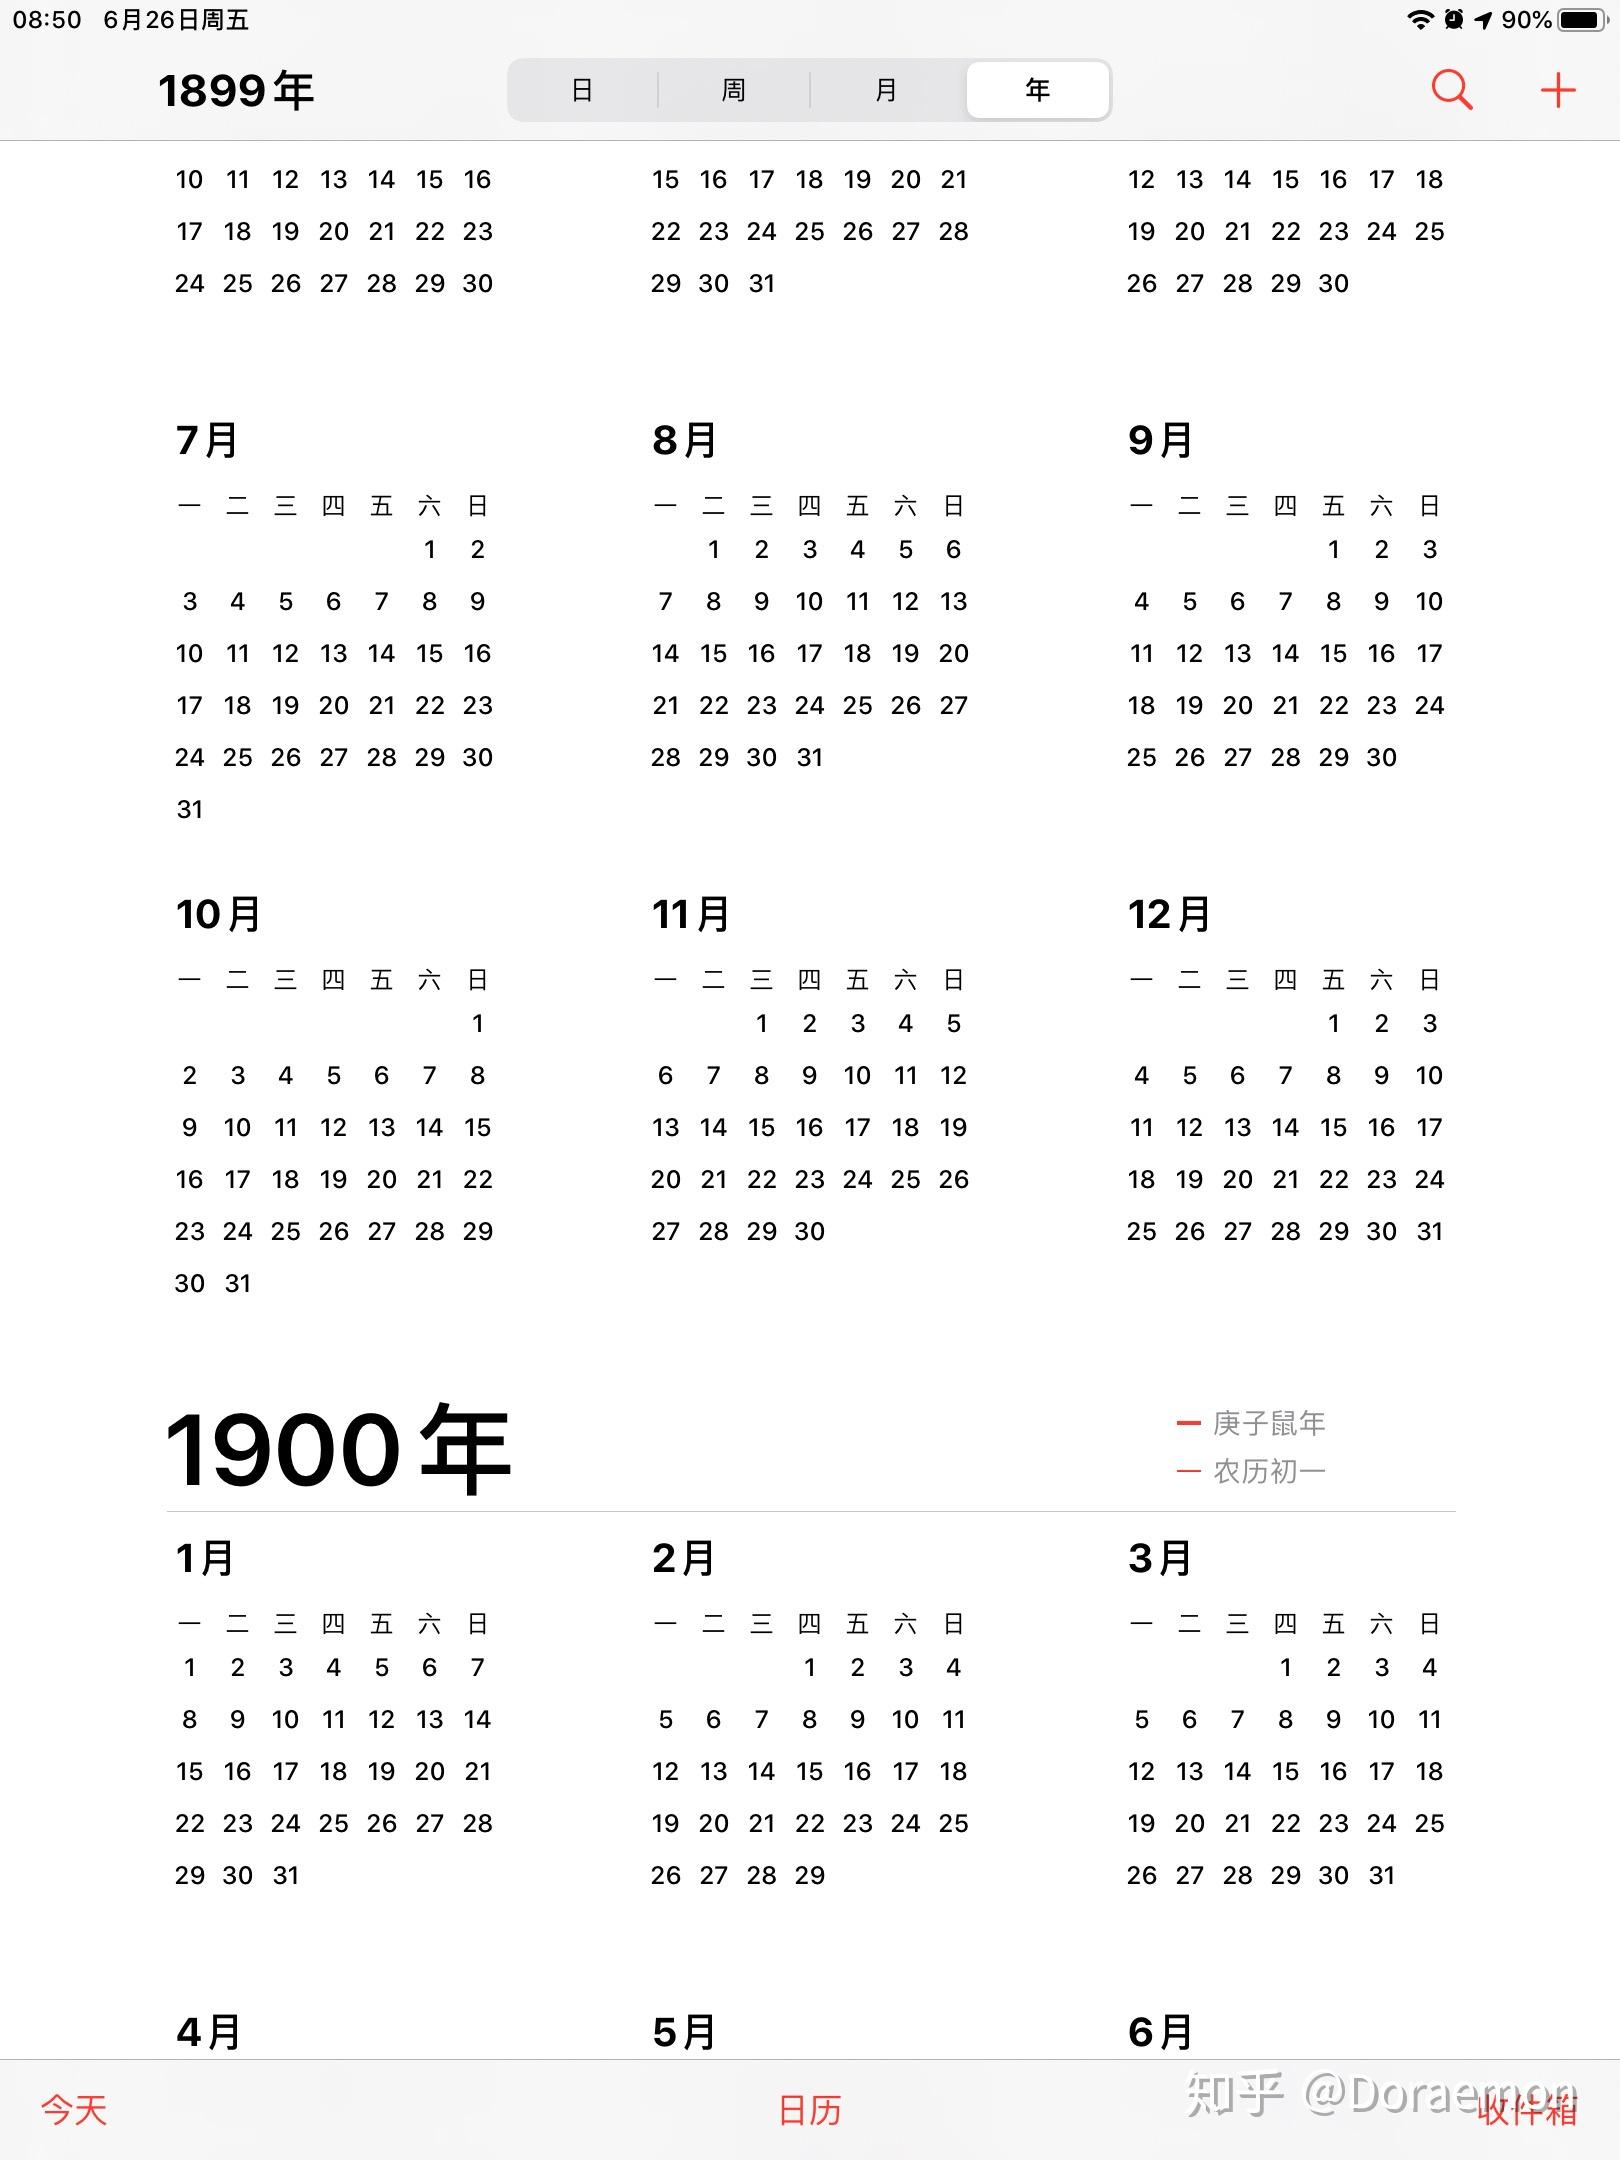 1900年日历表全年图片图片